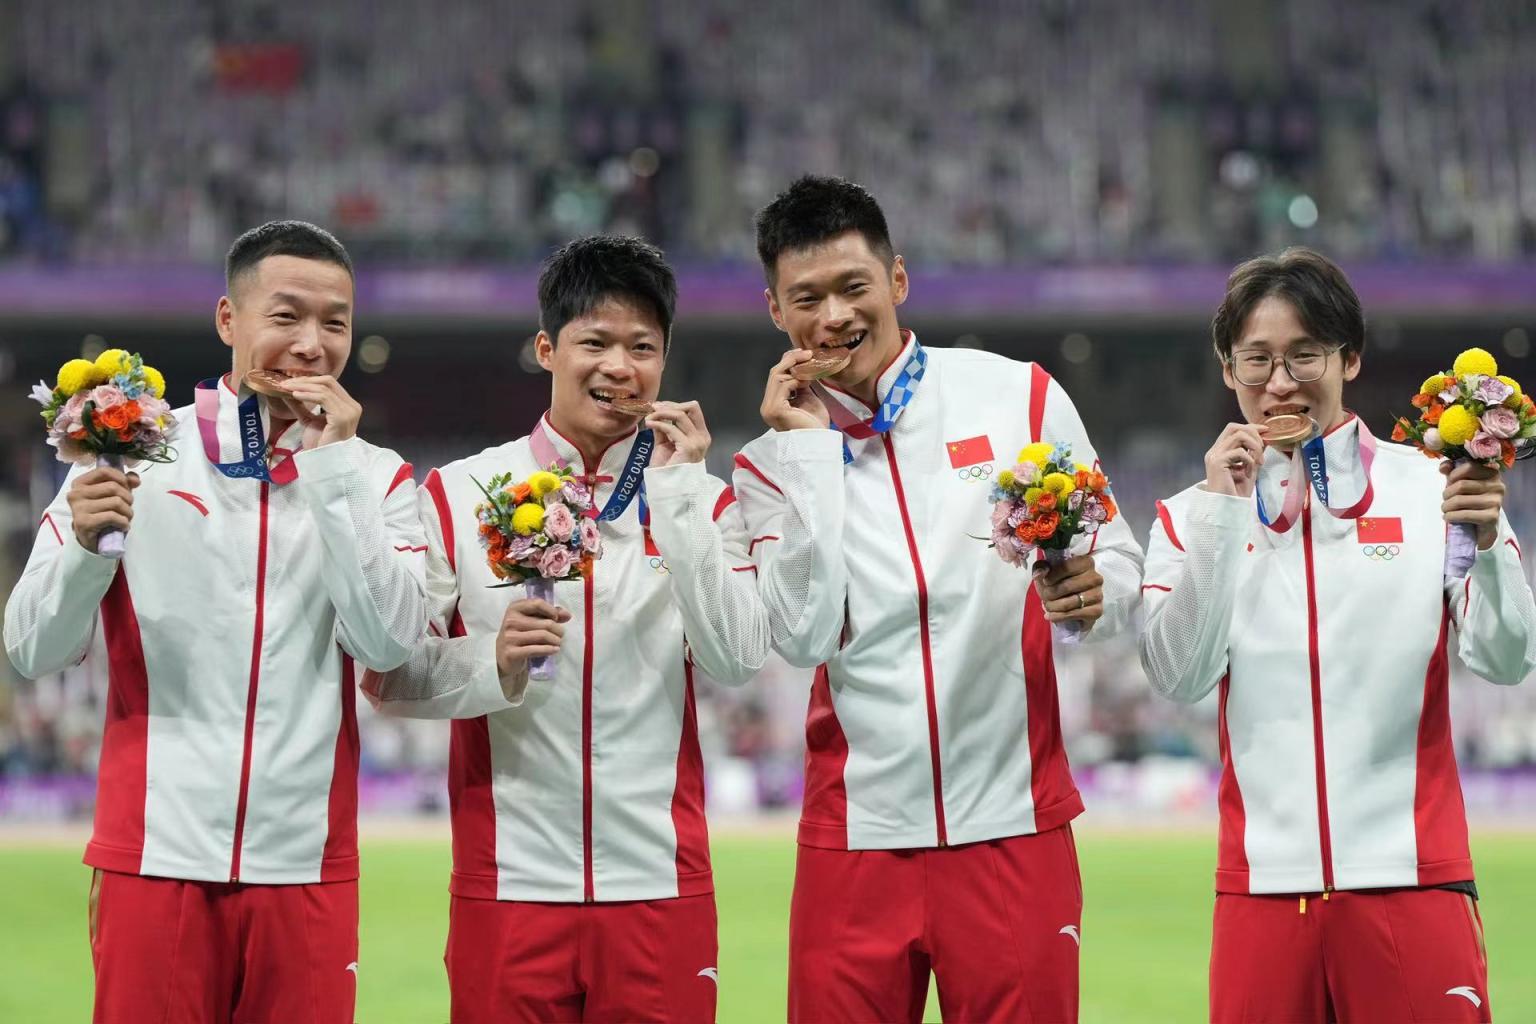 共同见证苏炳添等七名田径运动员获得补发的奥运奖牌